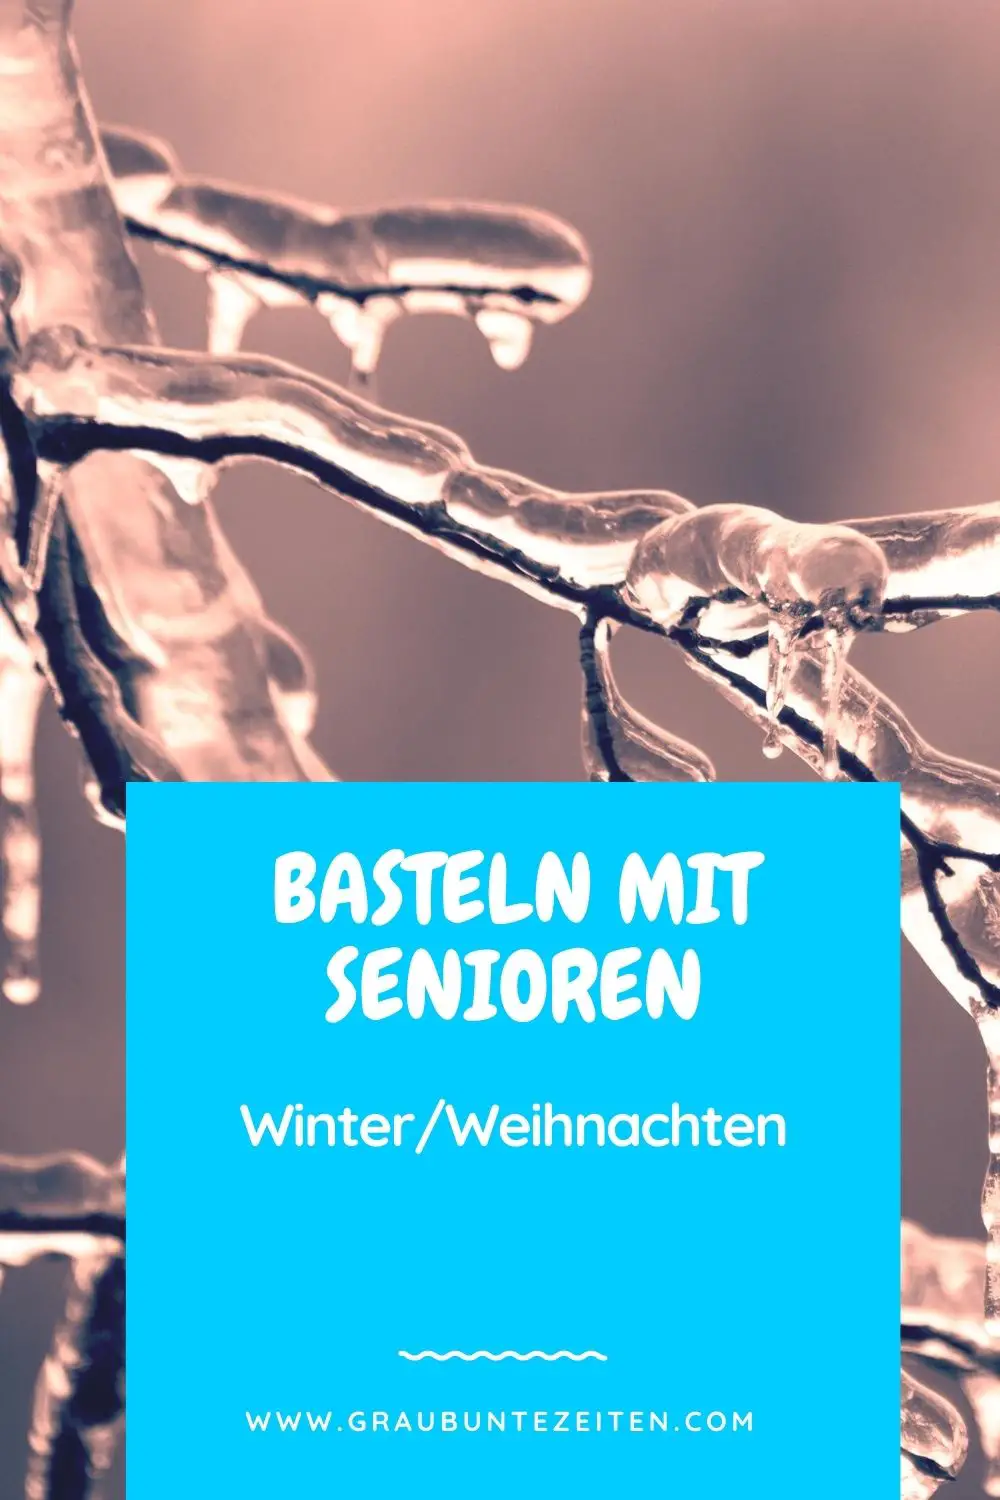 Basteln mit Senioren - Winter / Weihnachten